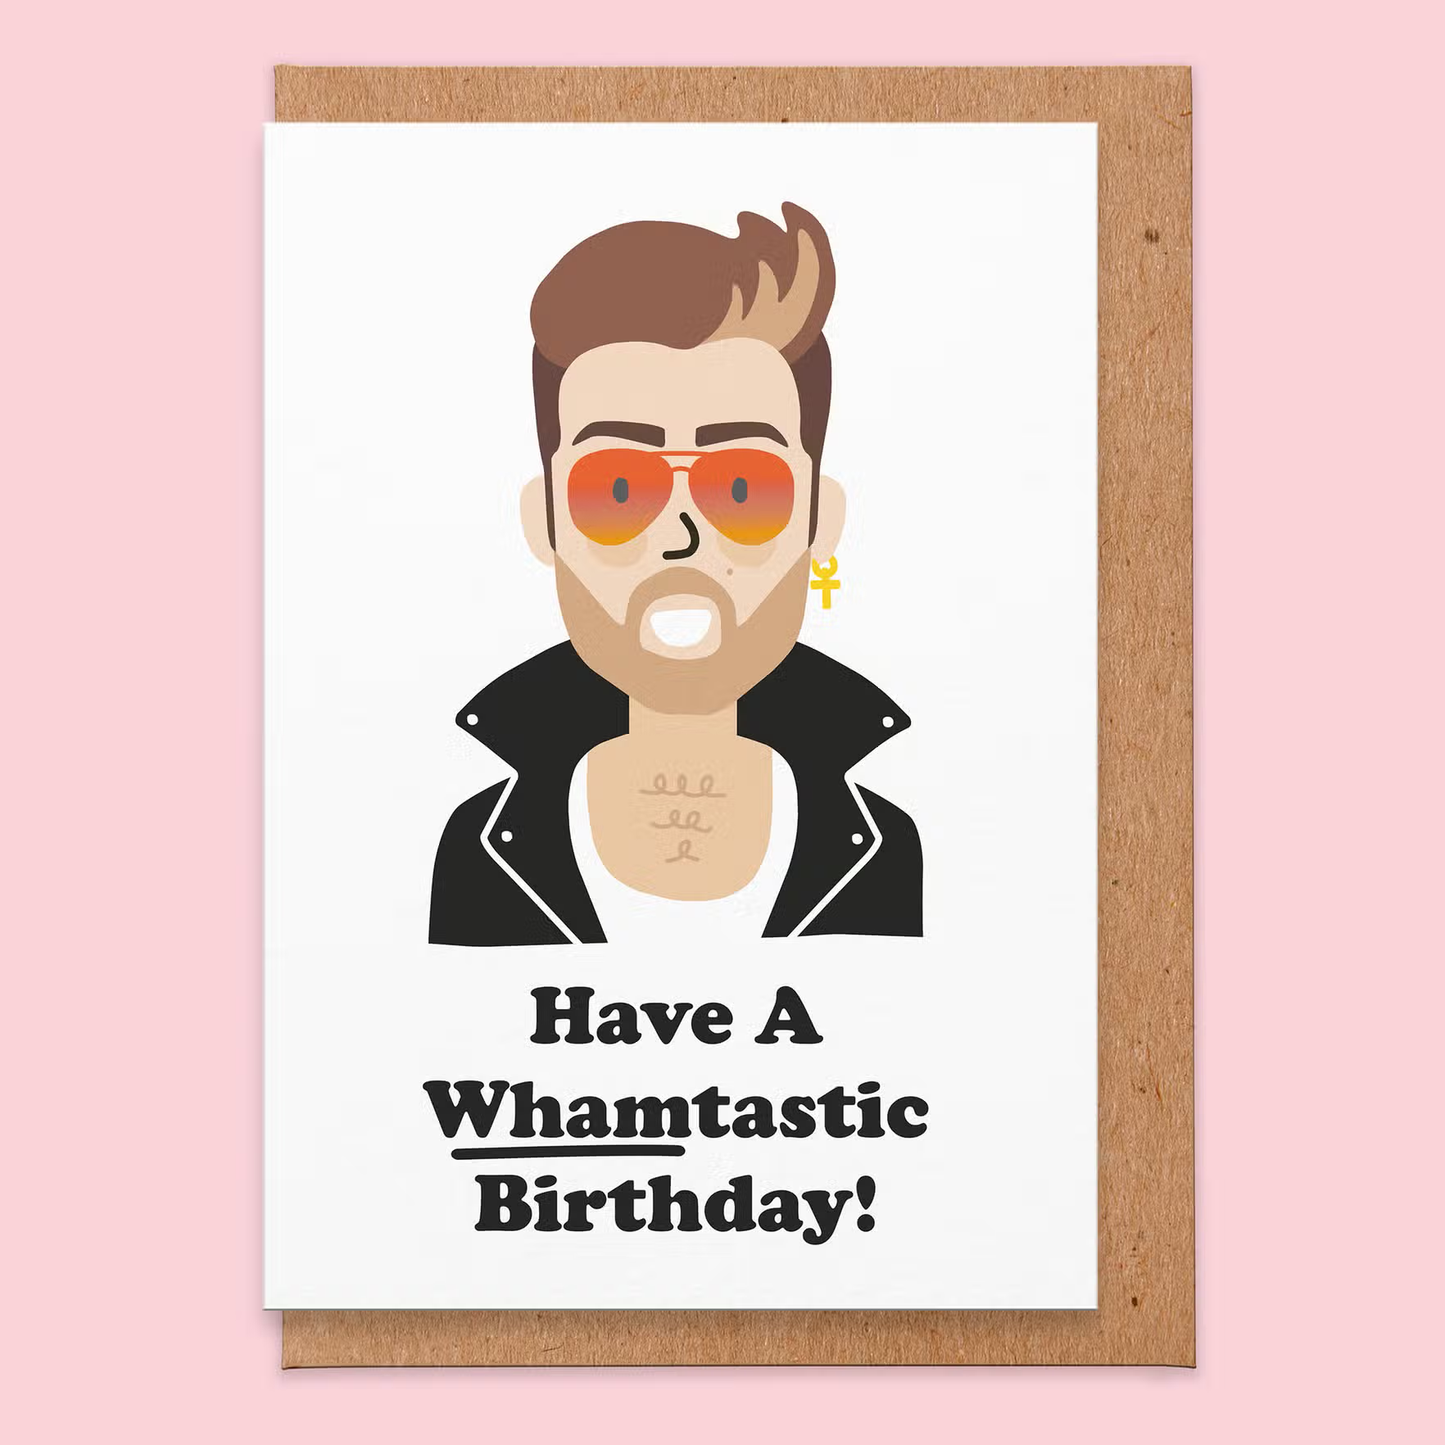 Whamtastic Greeting Card